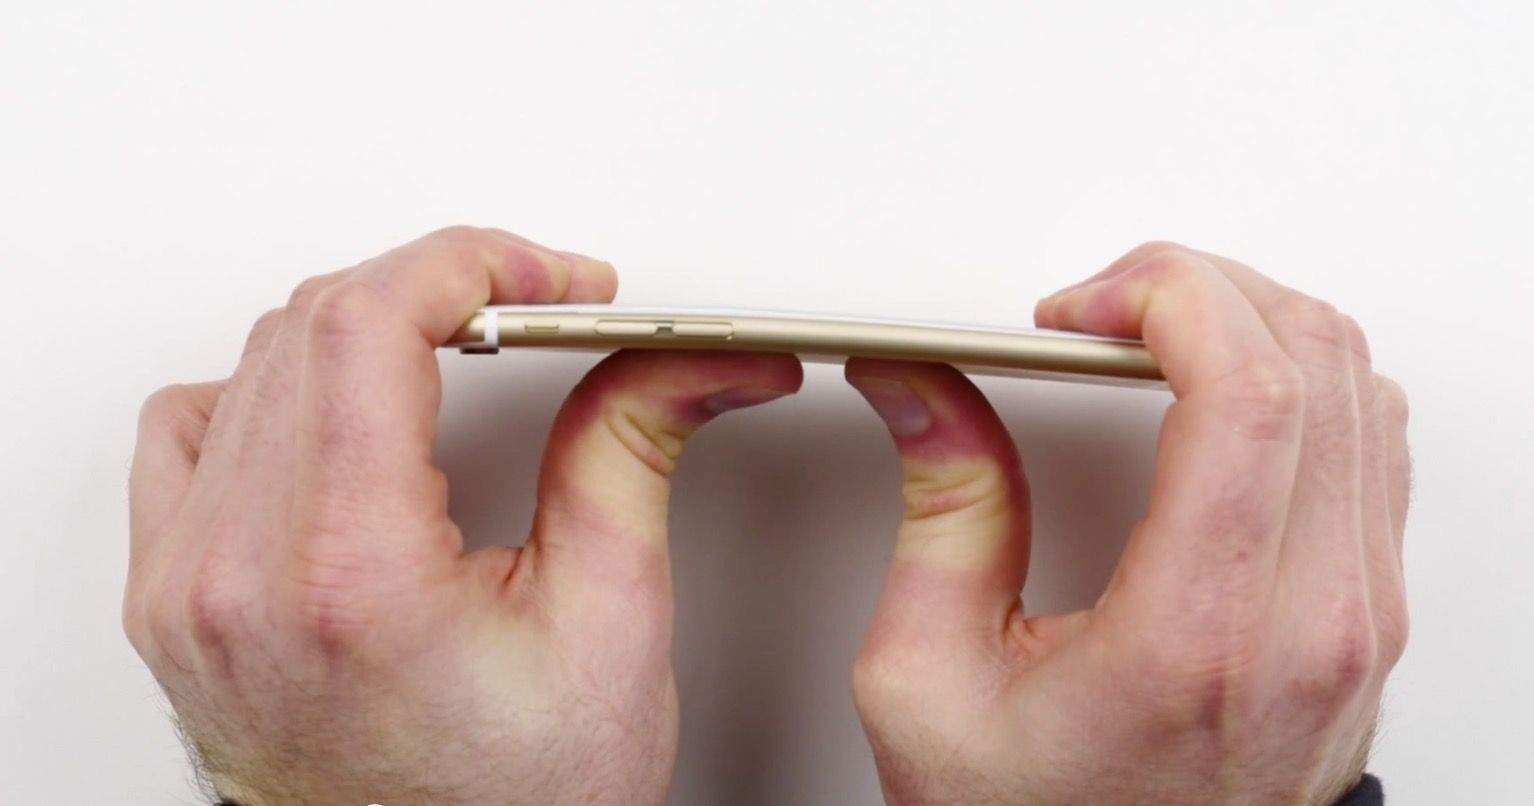 Apple wants people to stop bending its iPhones.